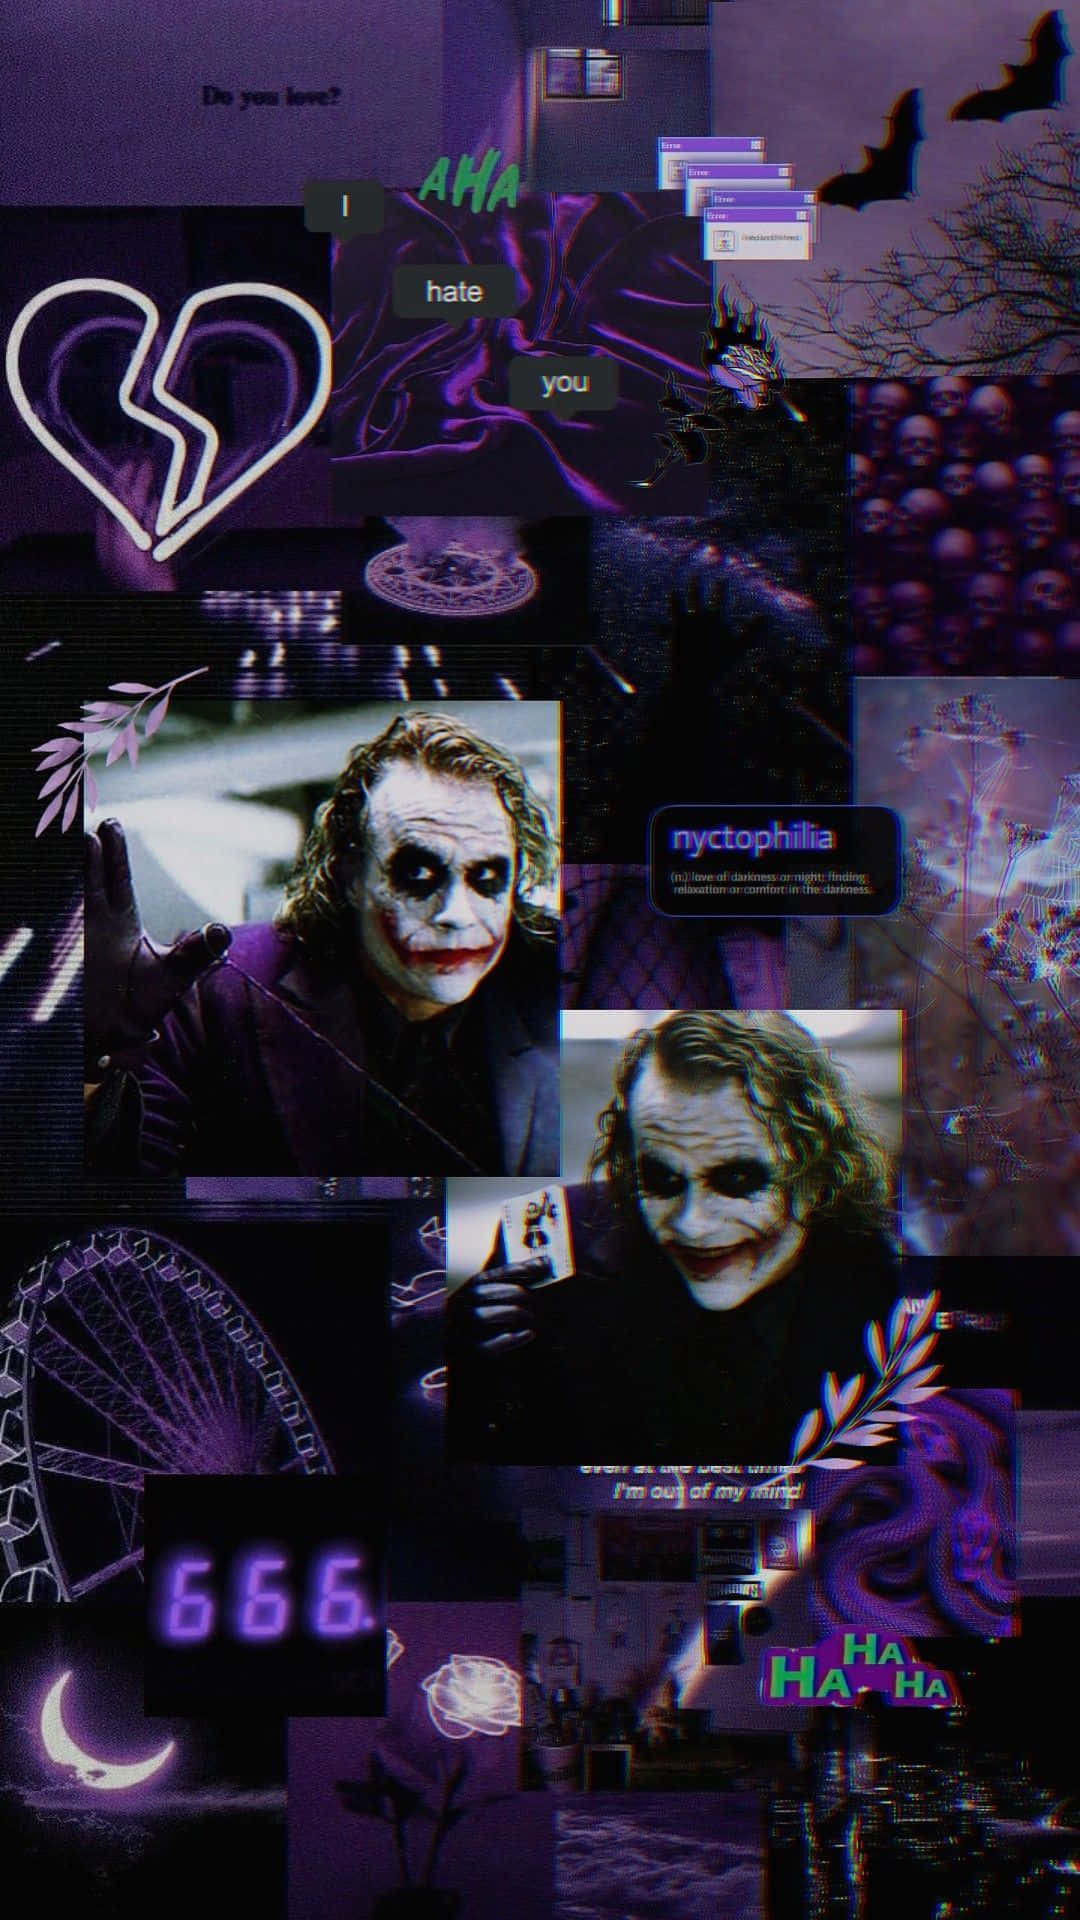 Joker: Joker - người hề đầy xấu xa nhưng lại khiến người ta bị cuốn hút bởi sự quyến rũ bí ẩn của mình. Những hình ảnh về anh ta sẽ đưa bạn vào những cung đường tăm tối của thành phố Gotham và khám phá ra bản chất thật sự của nhân vật này.